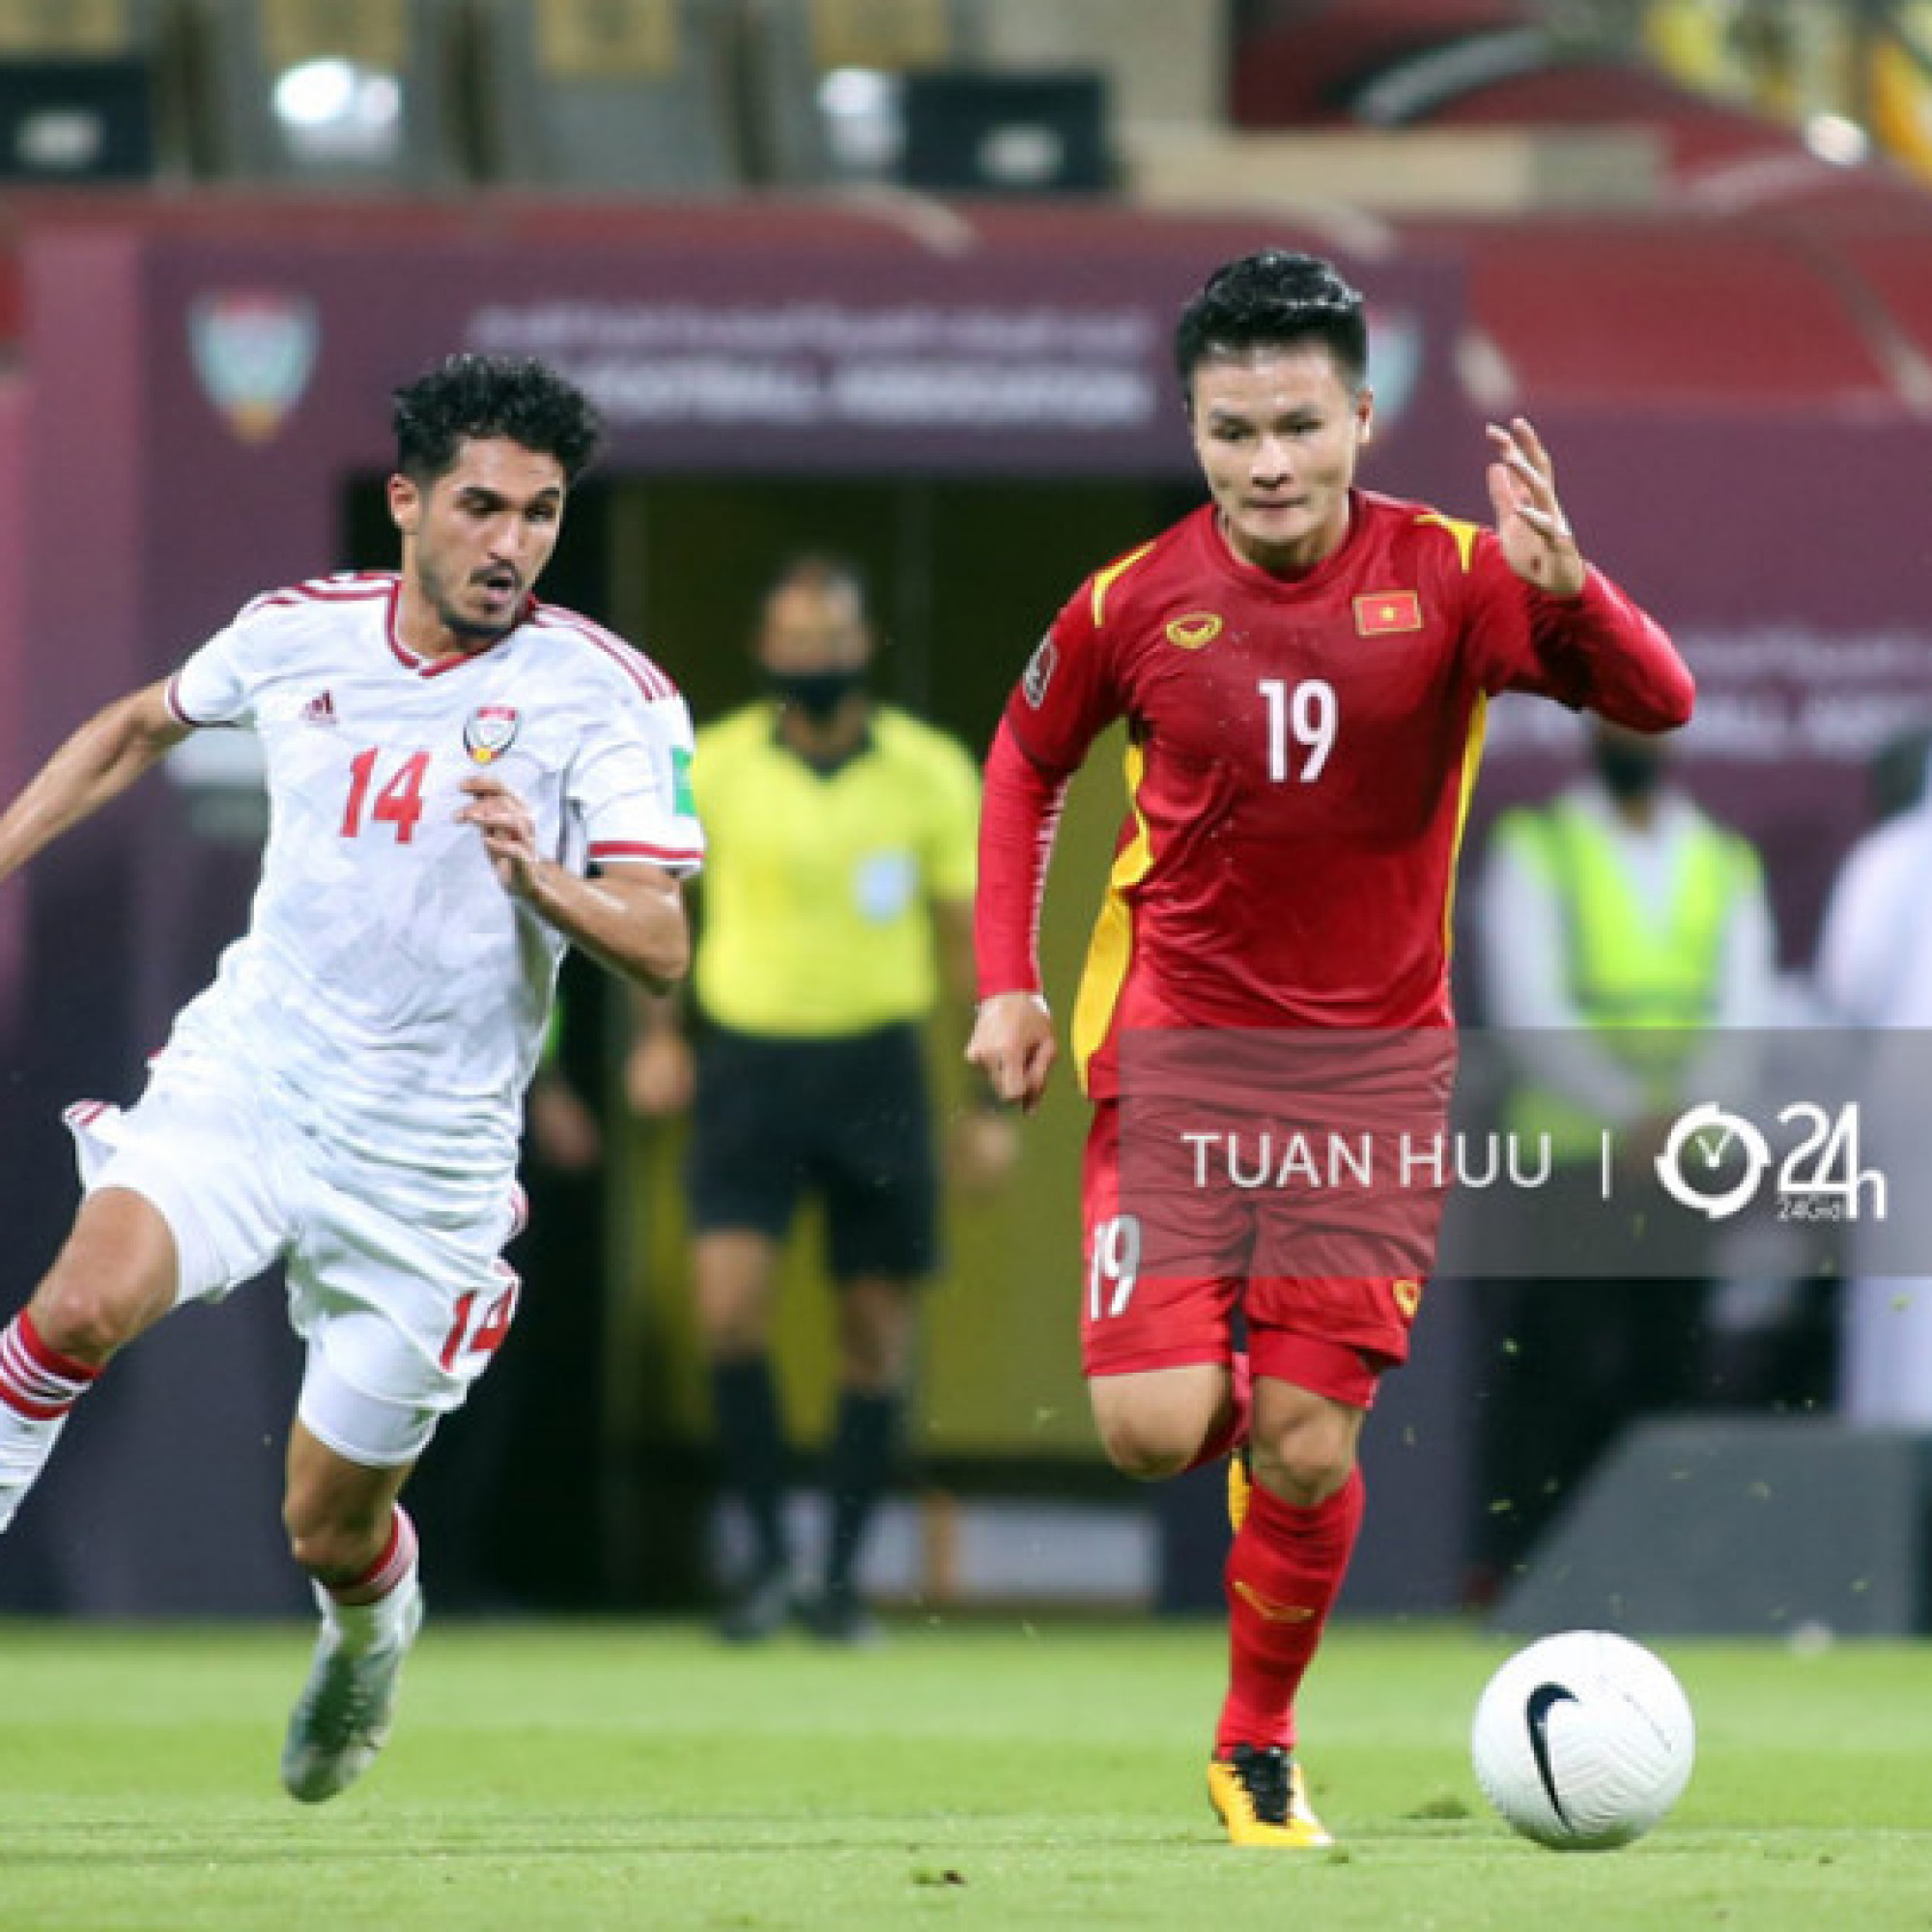 Thể thao - ĐT Việt Nam lập chiến tích lịch sử, tăng mấy bậc trên bảng xếp hạng FIFA?